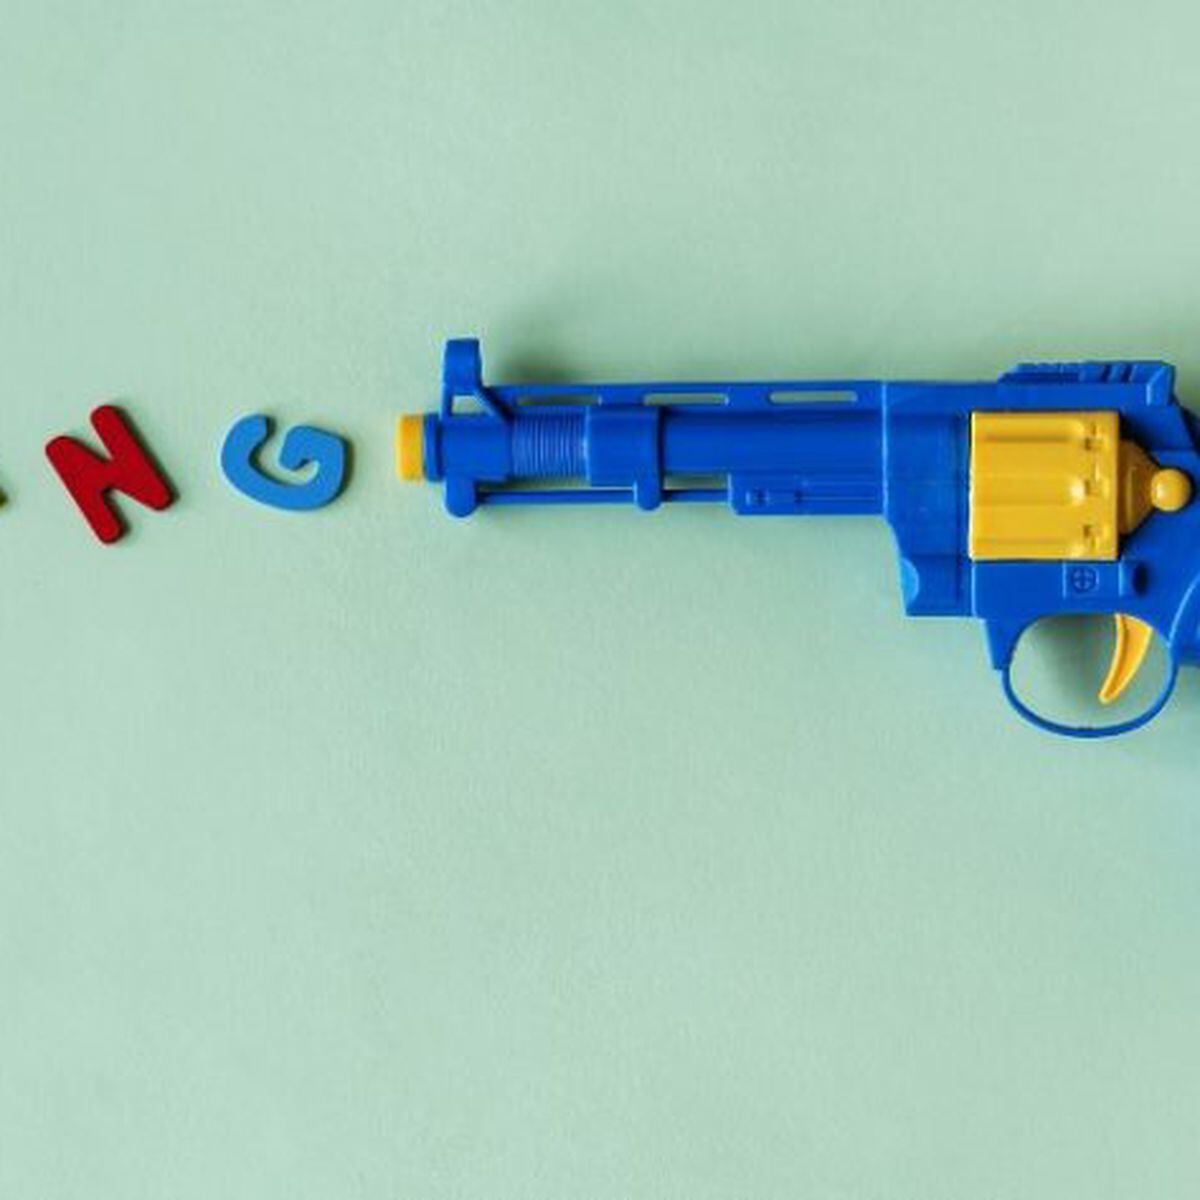 Arma não é brinquedo nem deve ser brincadeira - Blog Saúde Infantil